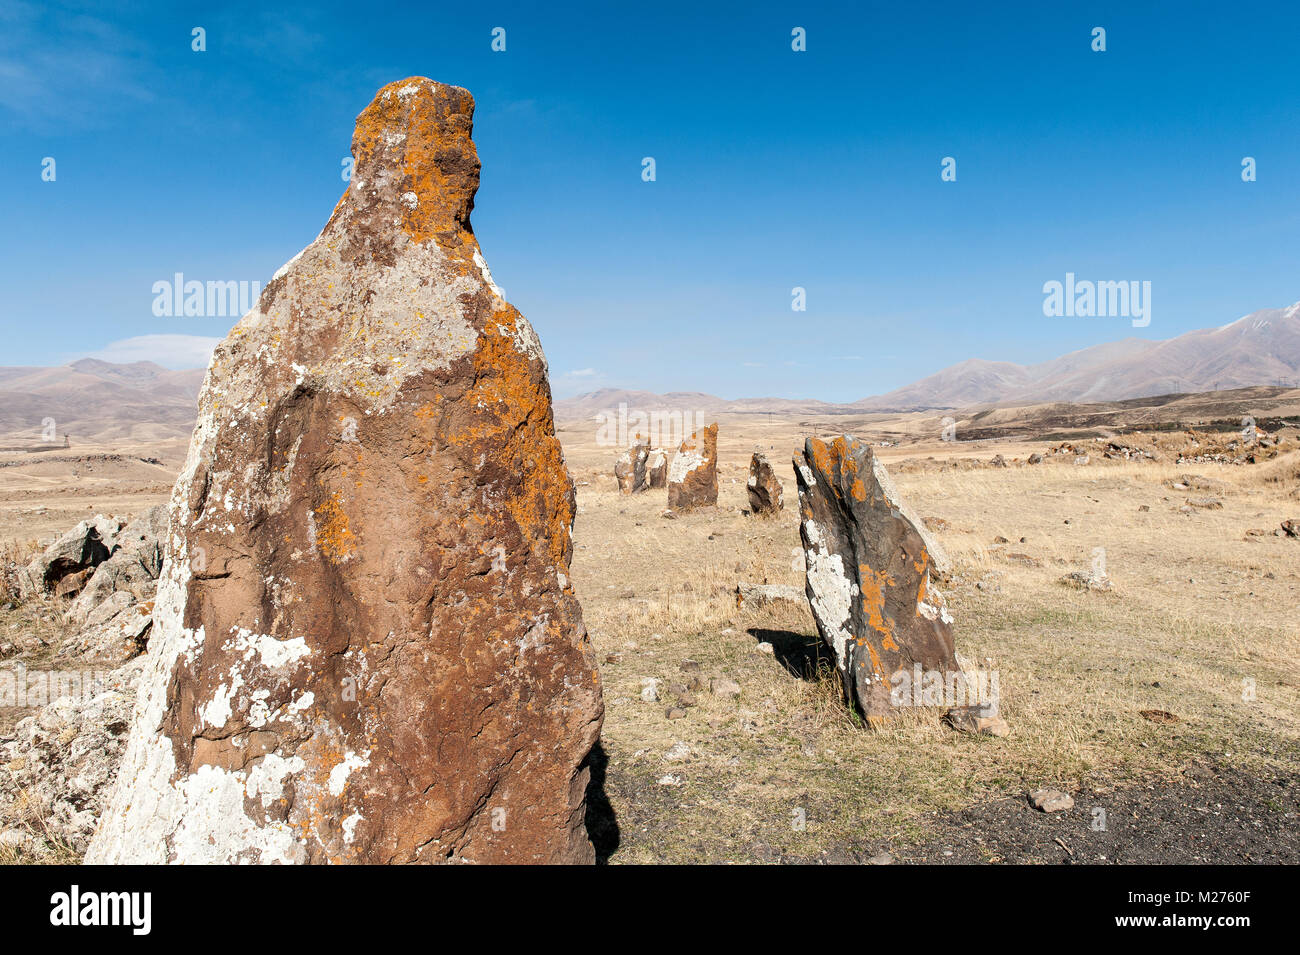 Zorats Karer o Carahunge es un yacimiento prehistórico con menhires astronómico,cerca de la ciudad de Sisian en la provincia de Syunik Armenia. Foto de stock